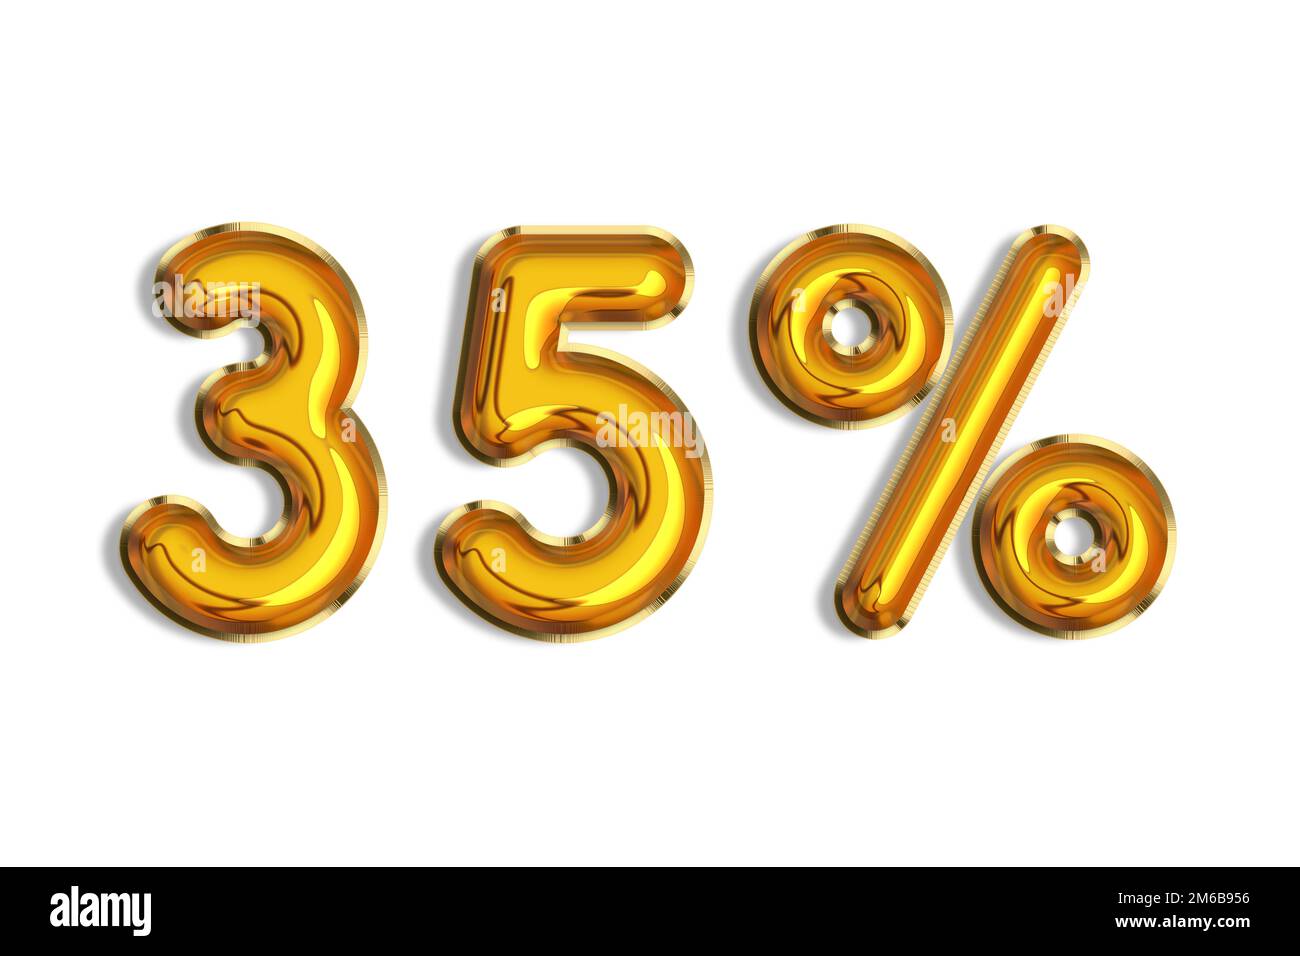 35% di sconto promozione vendita fatta di realistici palloncini d'elio 3d oro. Illustrazione del simbolo della percentuale d'oro per la vendita di poster, banner, annunci, negozio Foto Stock